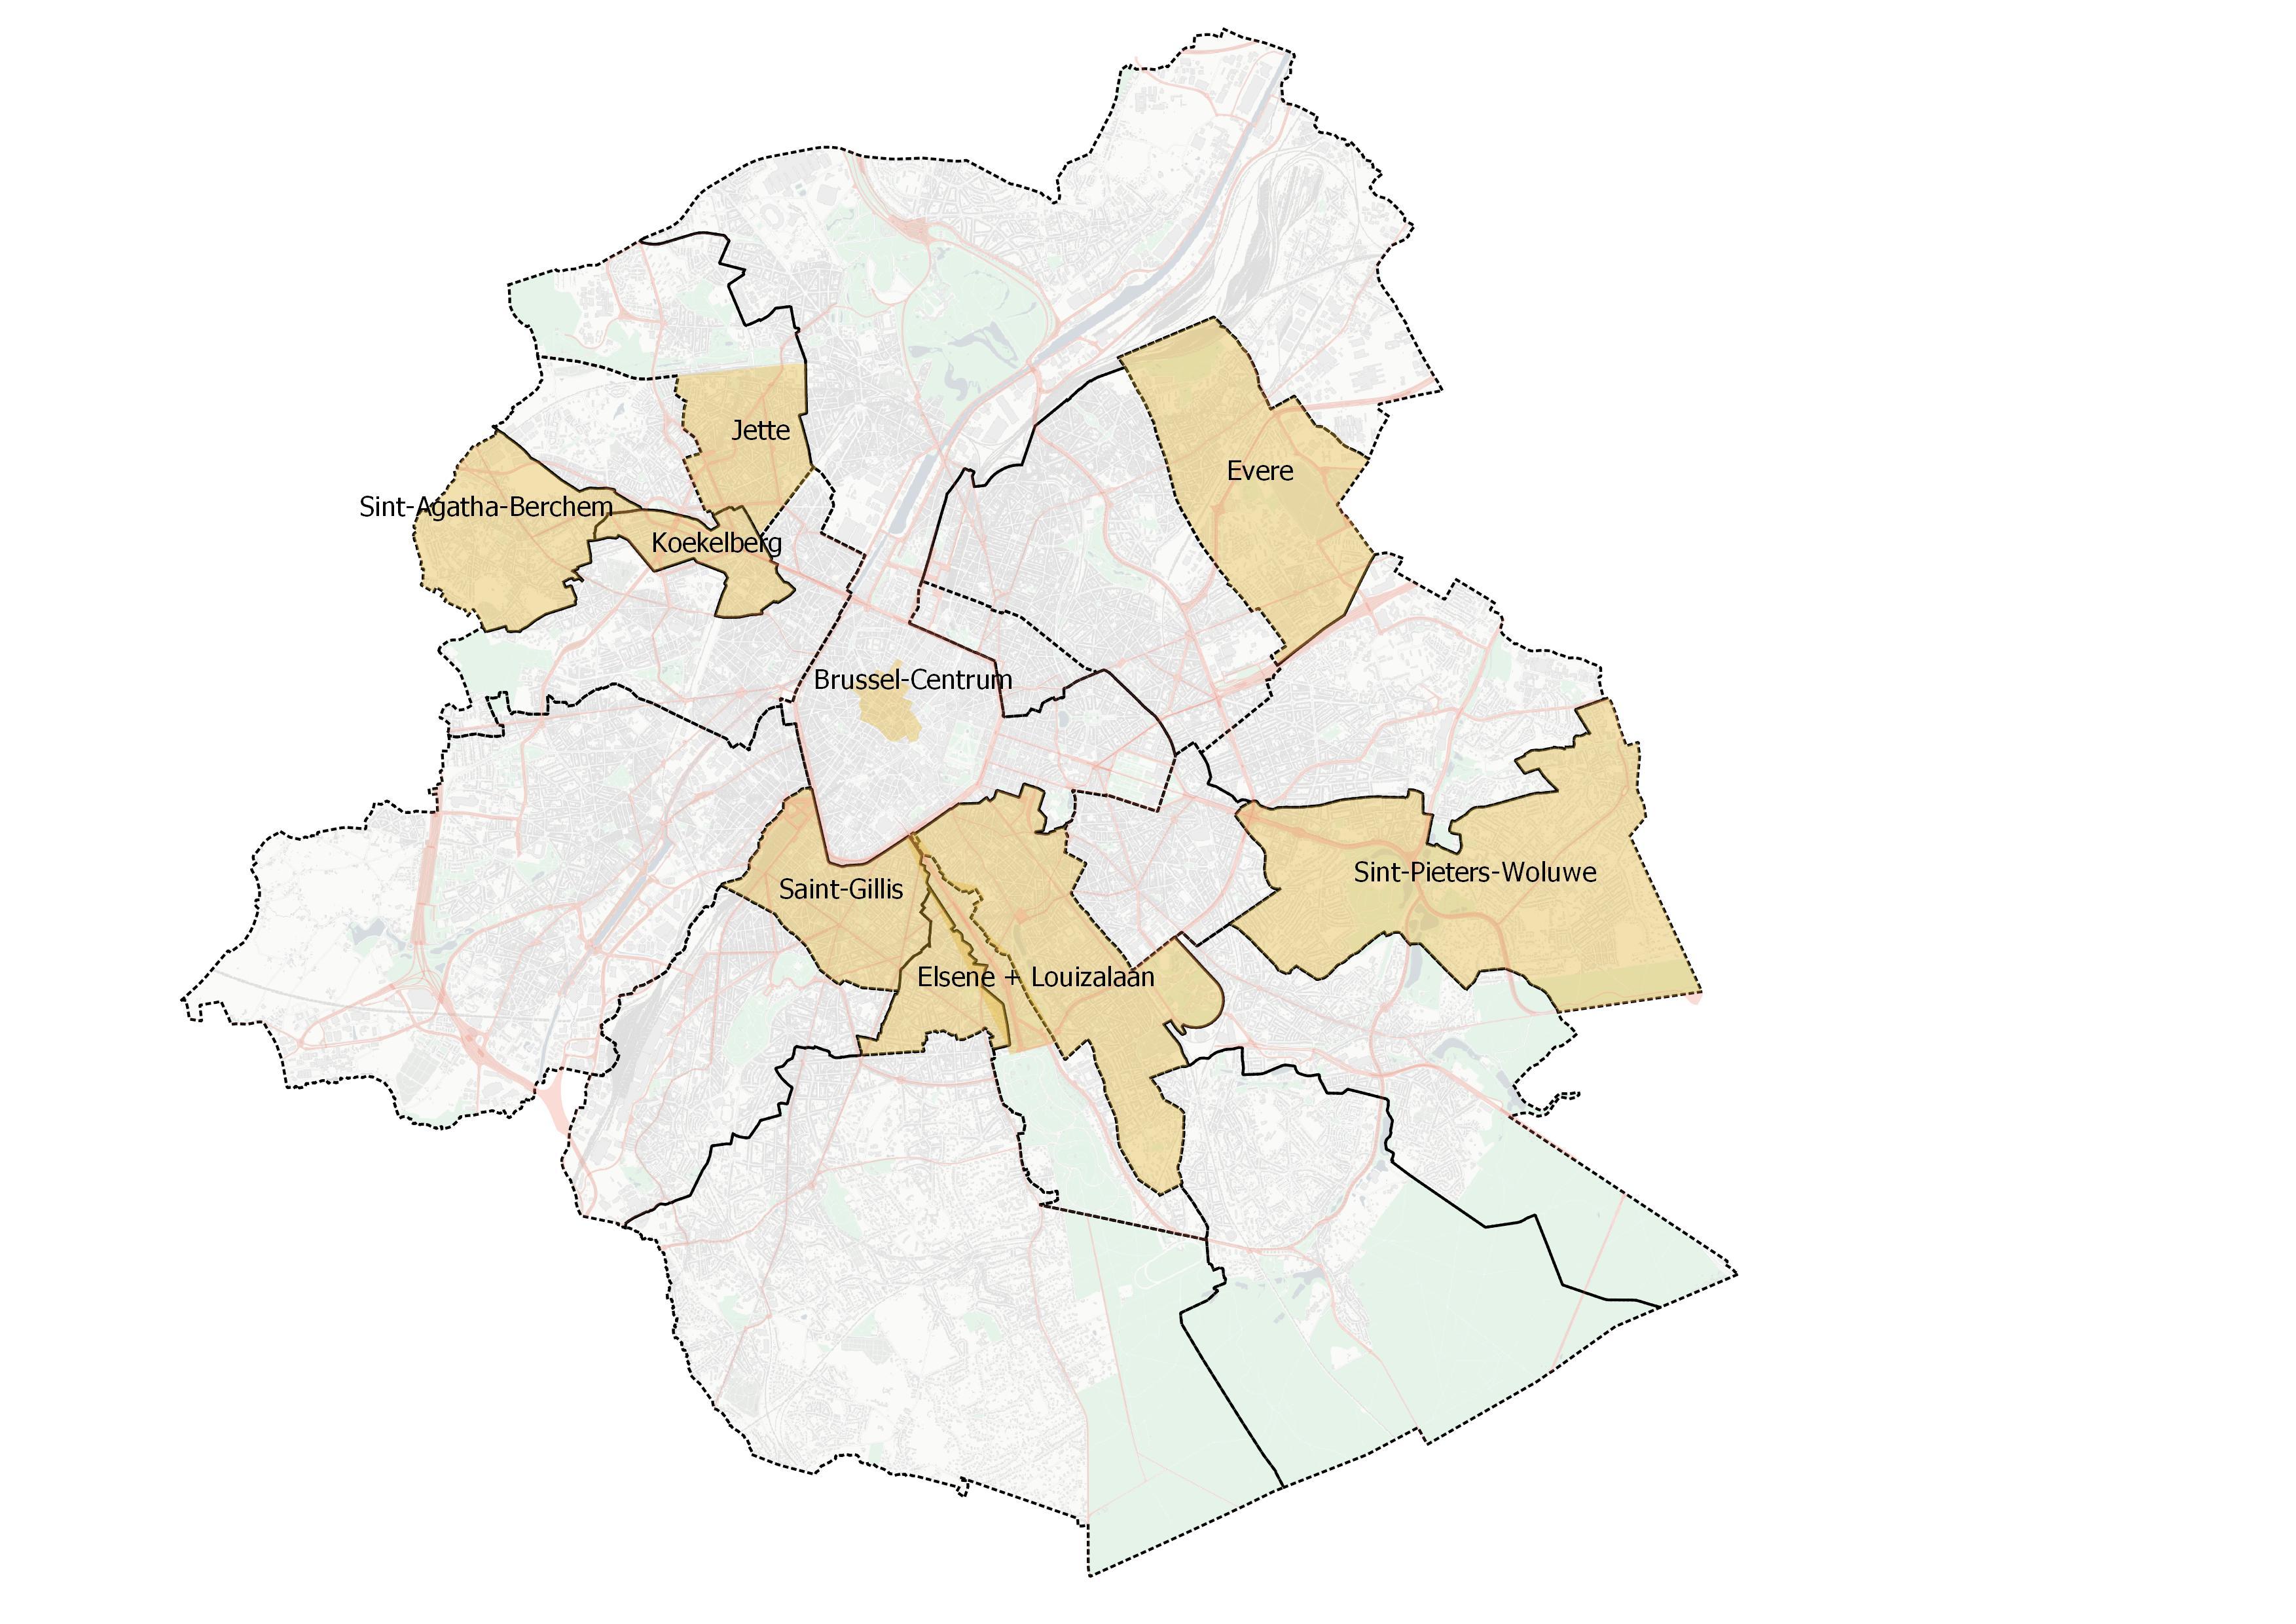 Gemeenten waar deelsteps al in drop-zones geparkeerd moeten worden > ongeveer 600 drop-zones beschikbaar